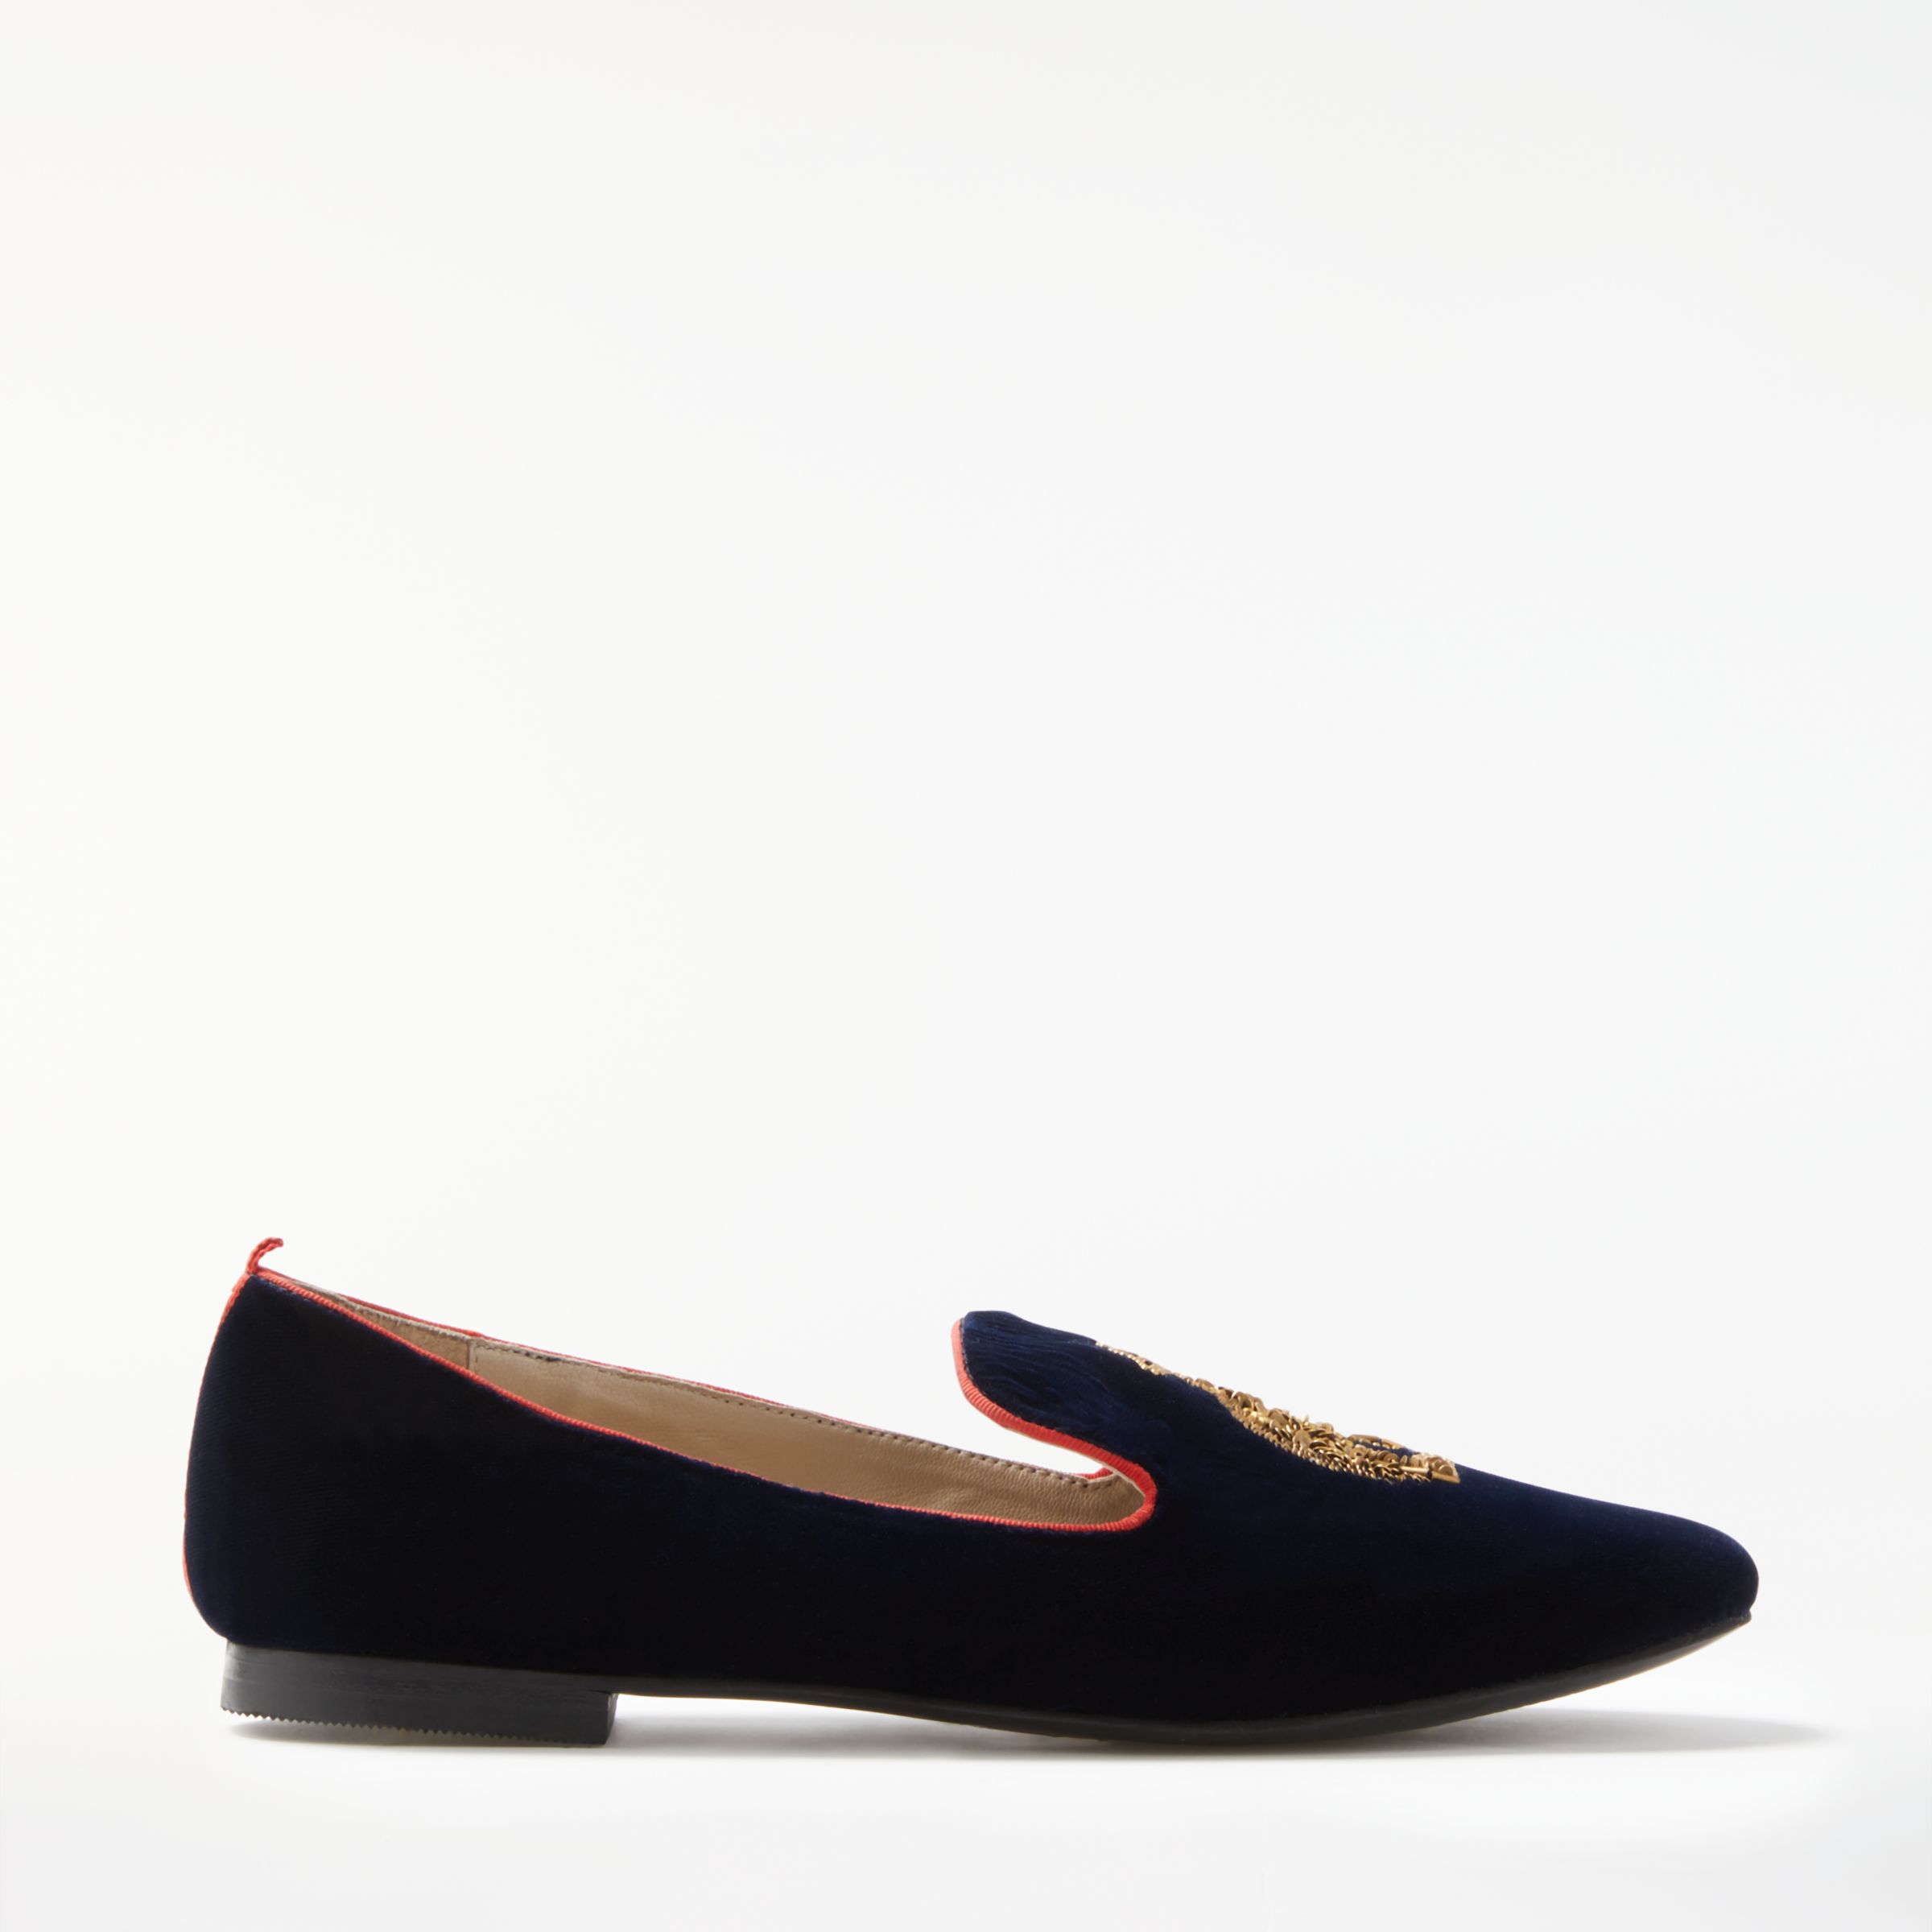 Boden Violetta Embellished Loafers, Navy, 6